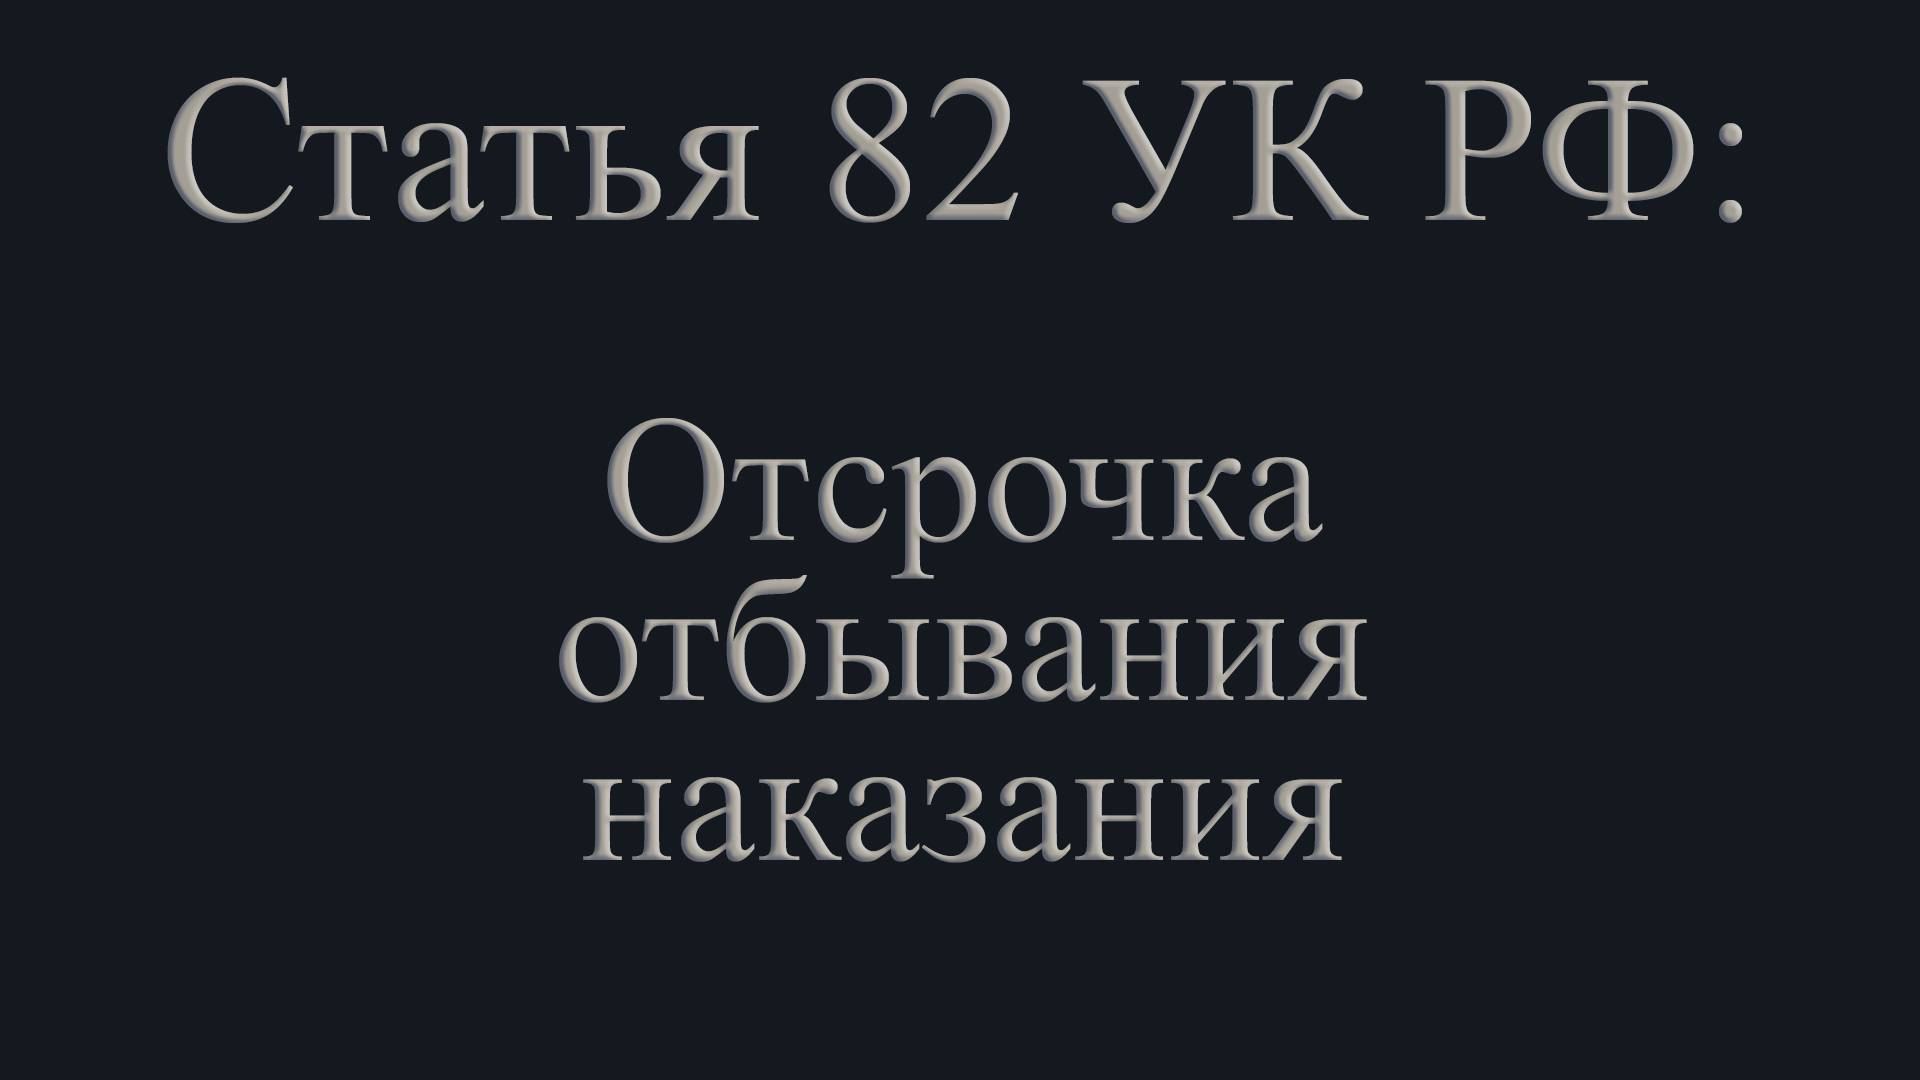 Статья 82 УК РФ: Отсрочка отбывания наказания.